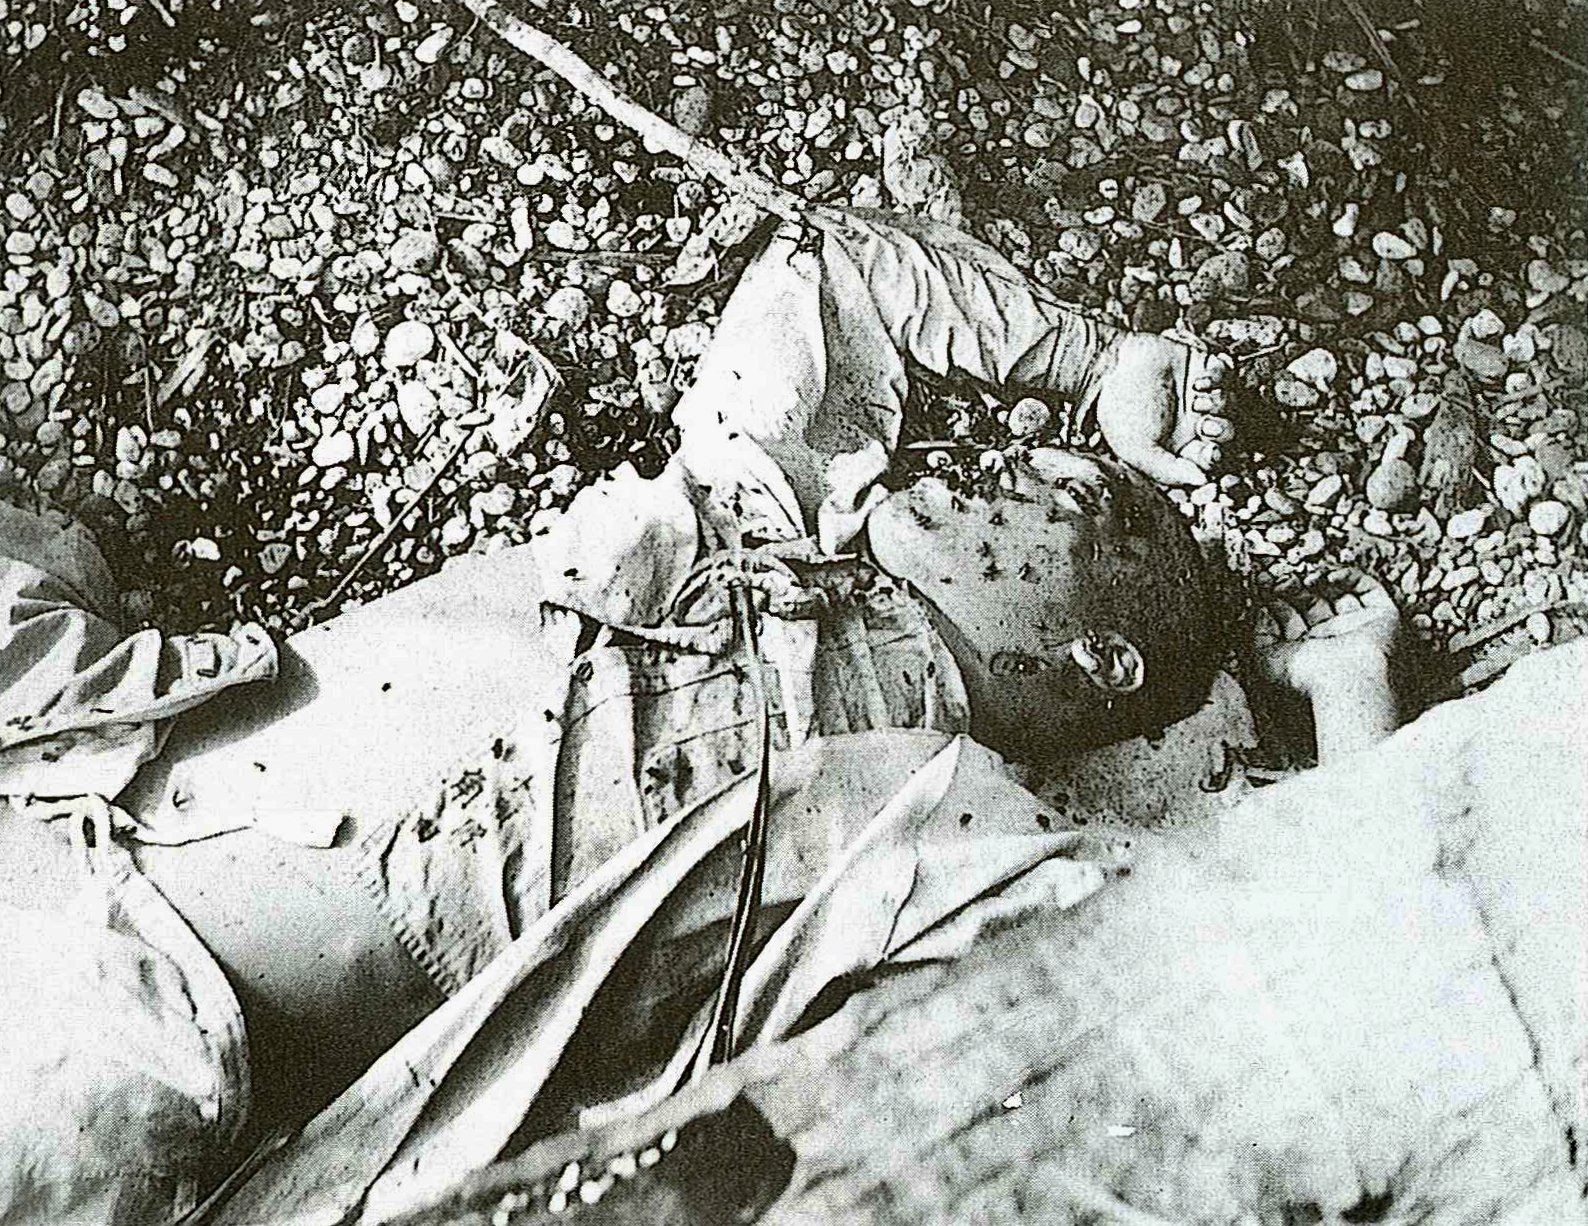 Japan No War Jnw 日本平和の市民連盟 太平洋戦争のガダルカナル島の戦いで 日本軍兵士が戦死や病死した死体に蝿が集り腐敗していた